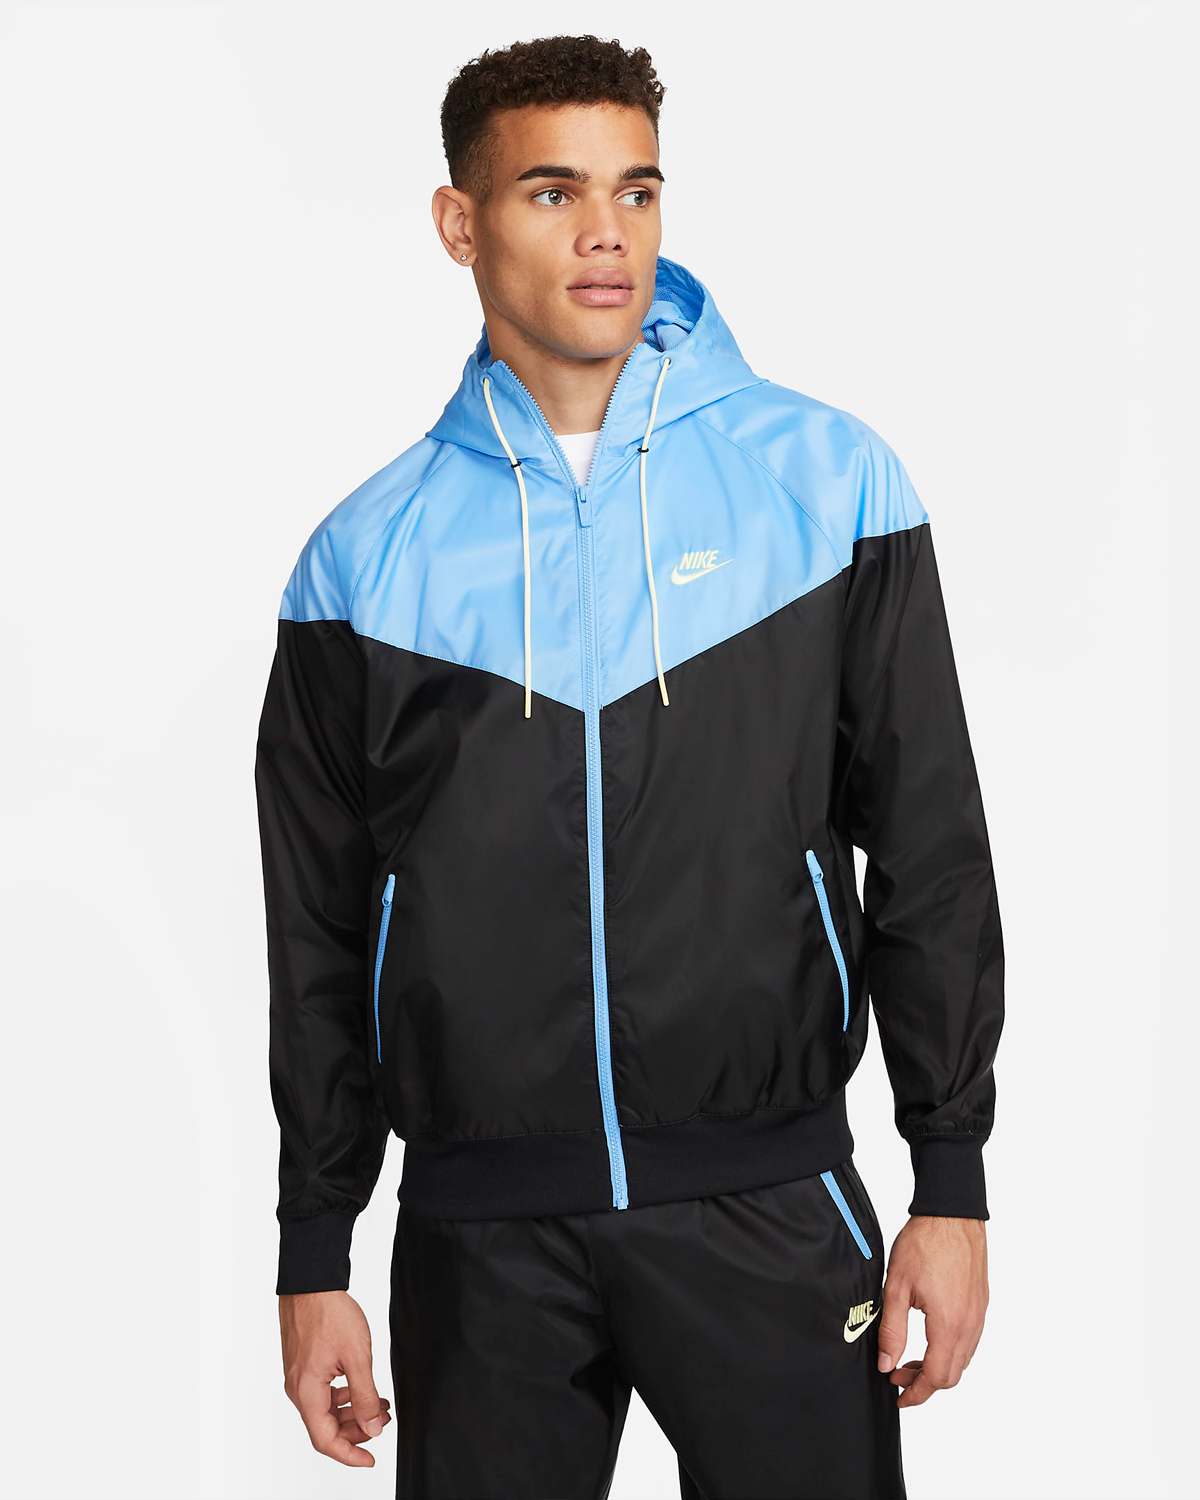 Nike-Sportswear-Windrunner-Hooded-Jacket-Black-University-Blue